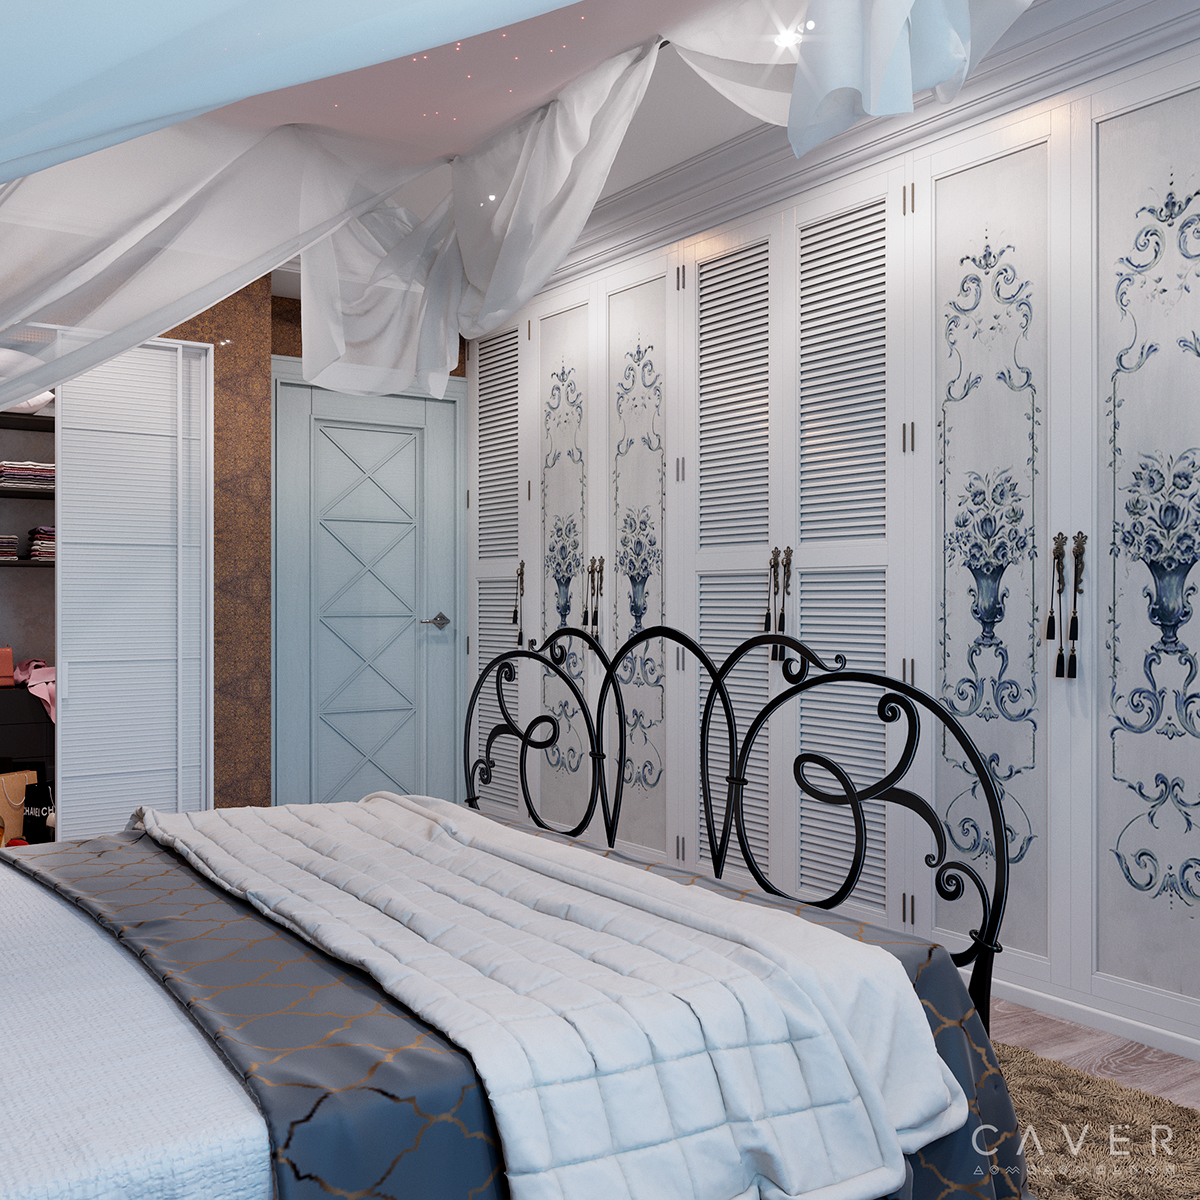 Прованс Provence bedroom Forged bed canopy stars кировоград Кропивницкий Caver Design